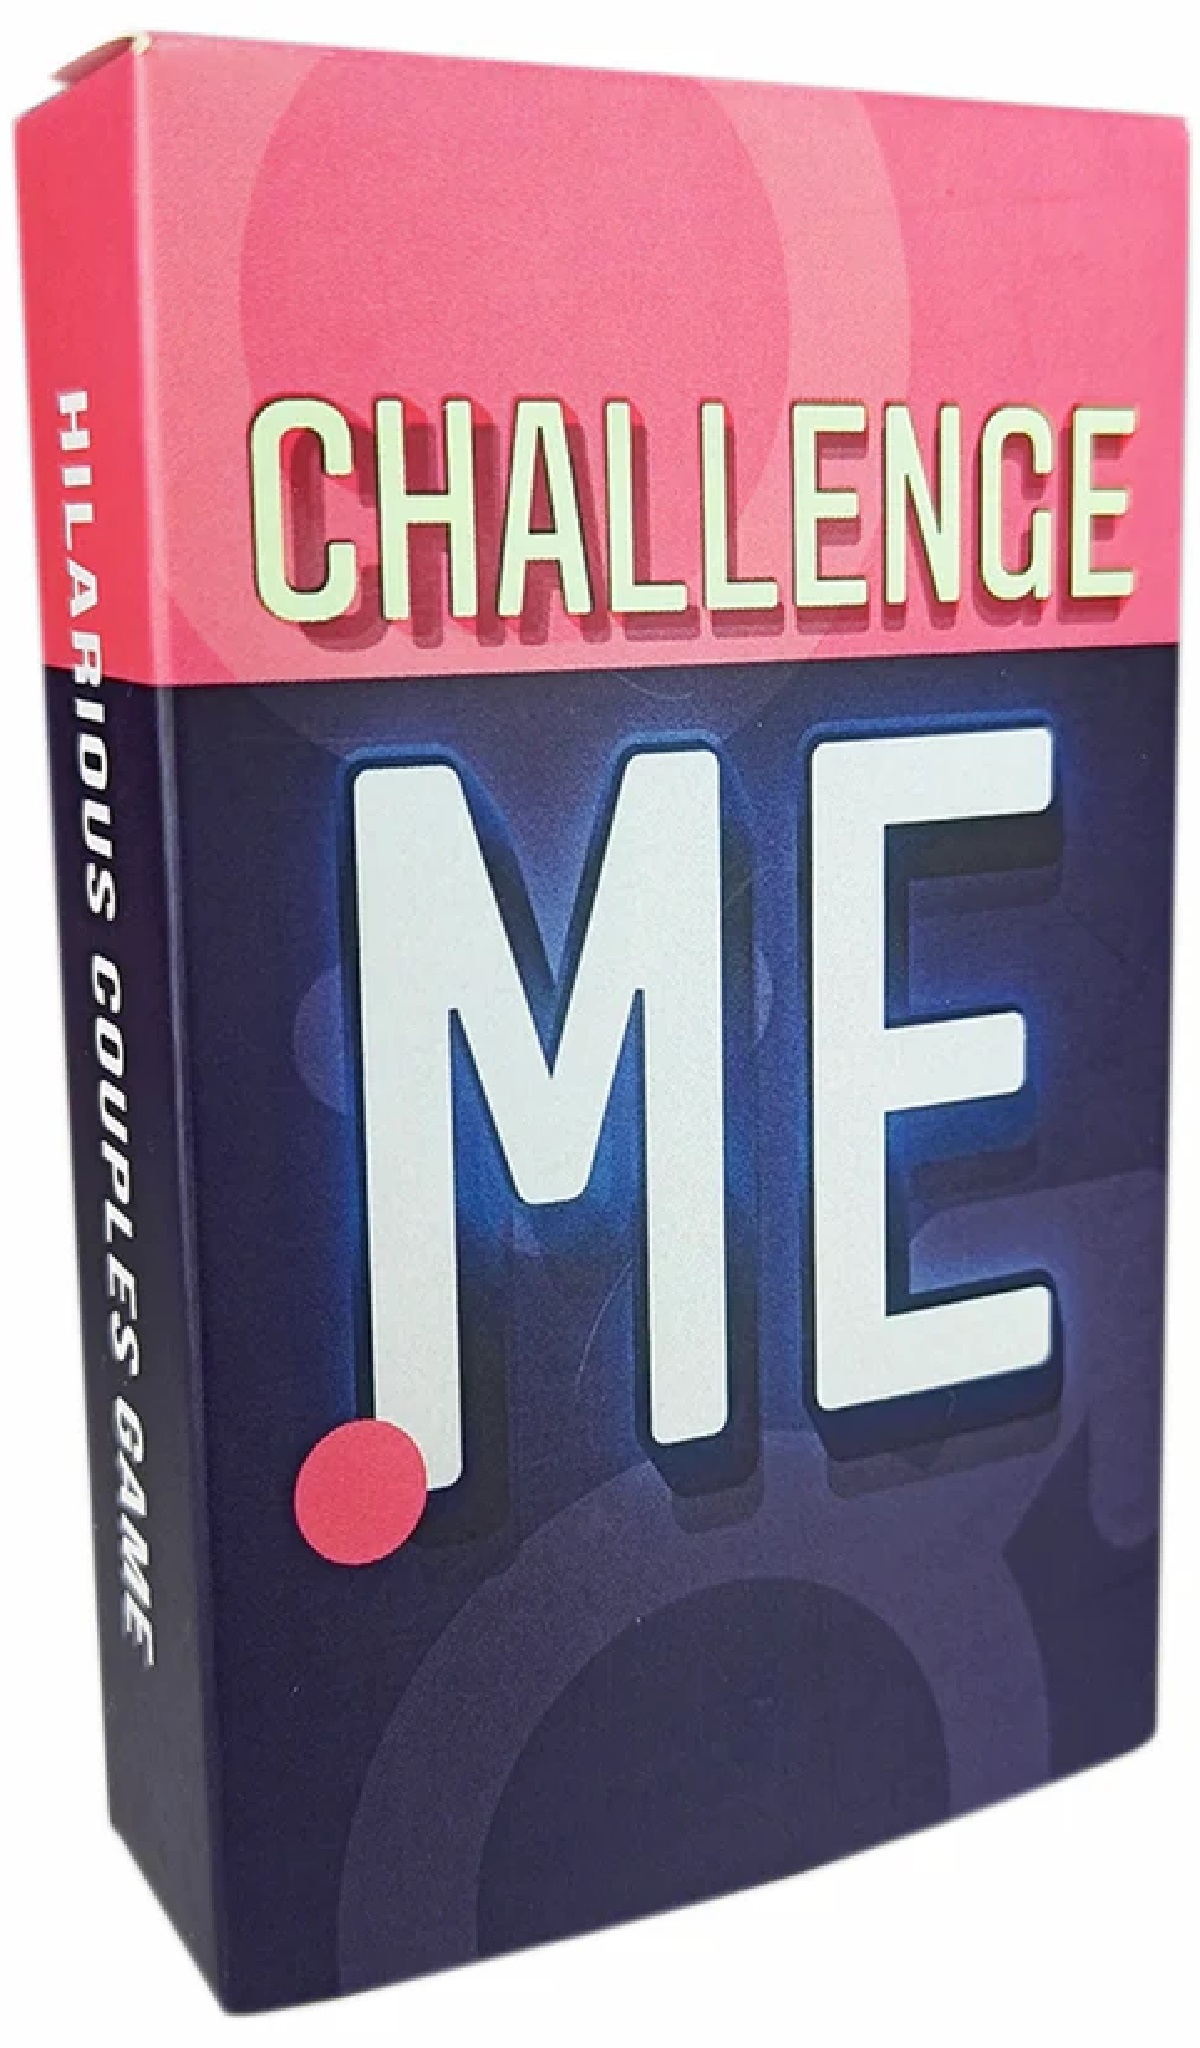 Joc pentru cupluri: Challenge Me